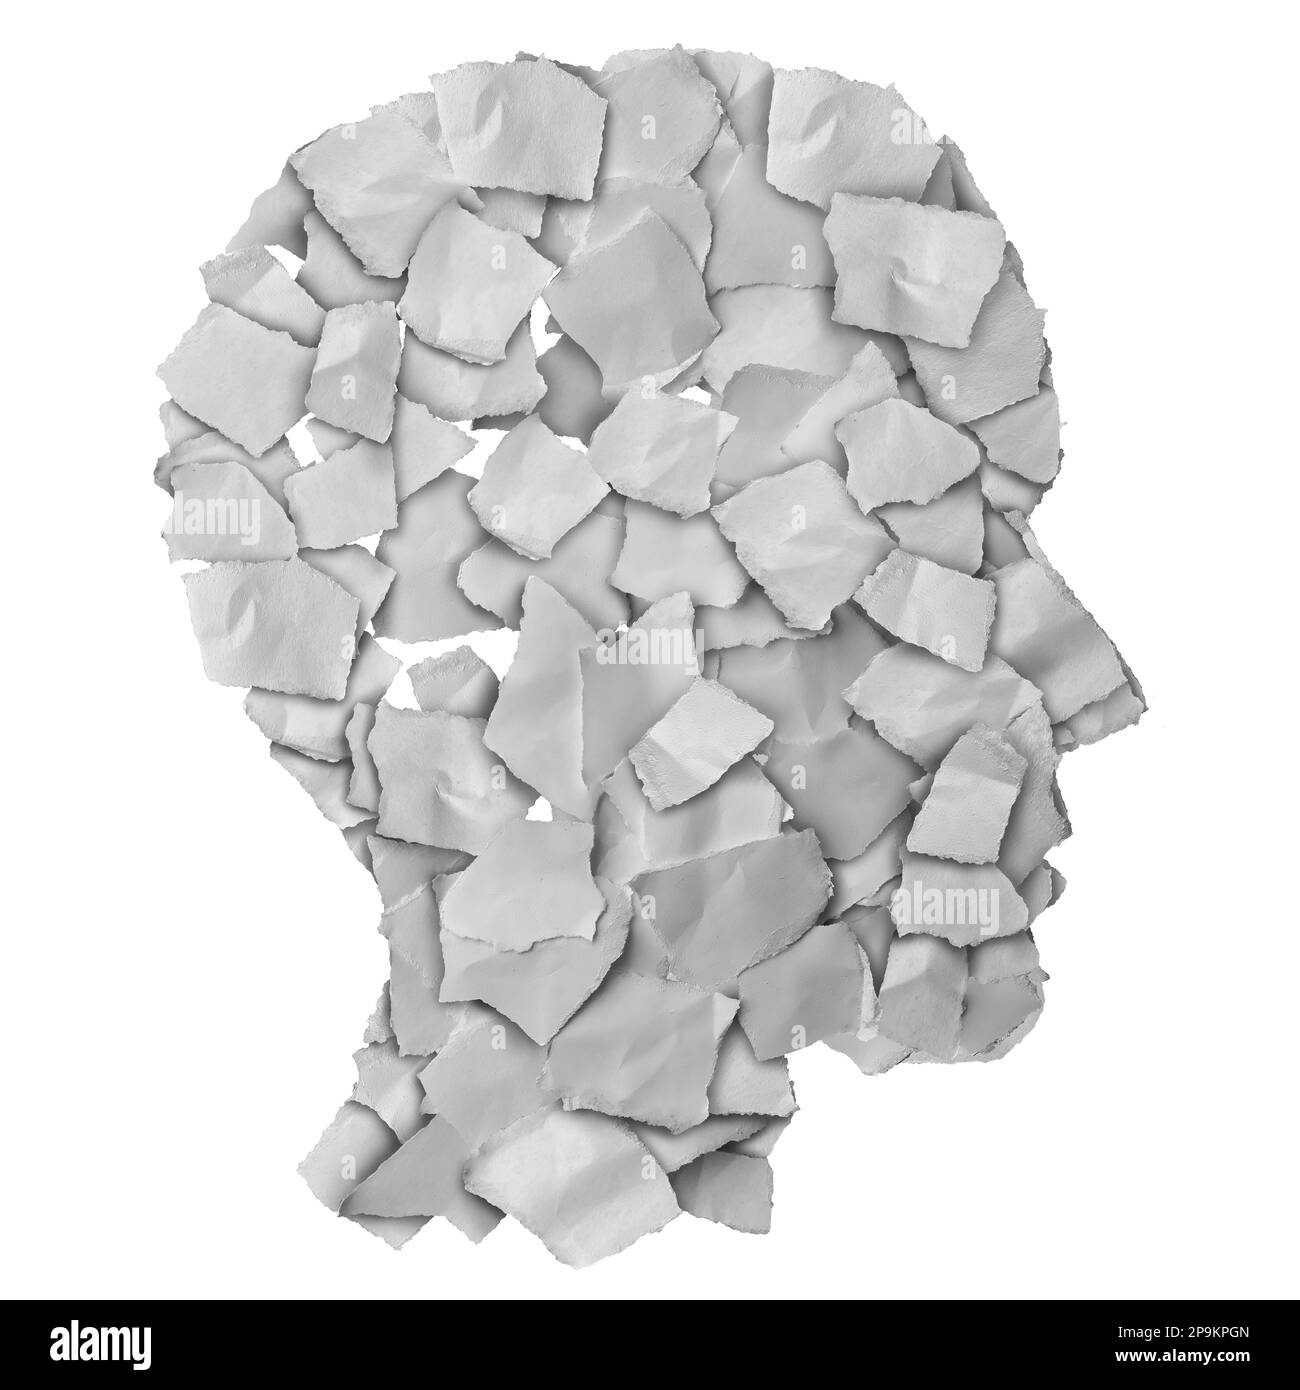 Resumen de la mente humana hecho de papel rasgado como símbolo de la conciencia y la emoción de la salud mental y la educación de la formación o la psicología. Foto de stock